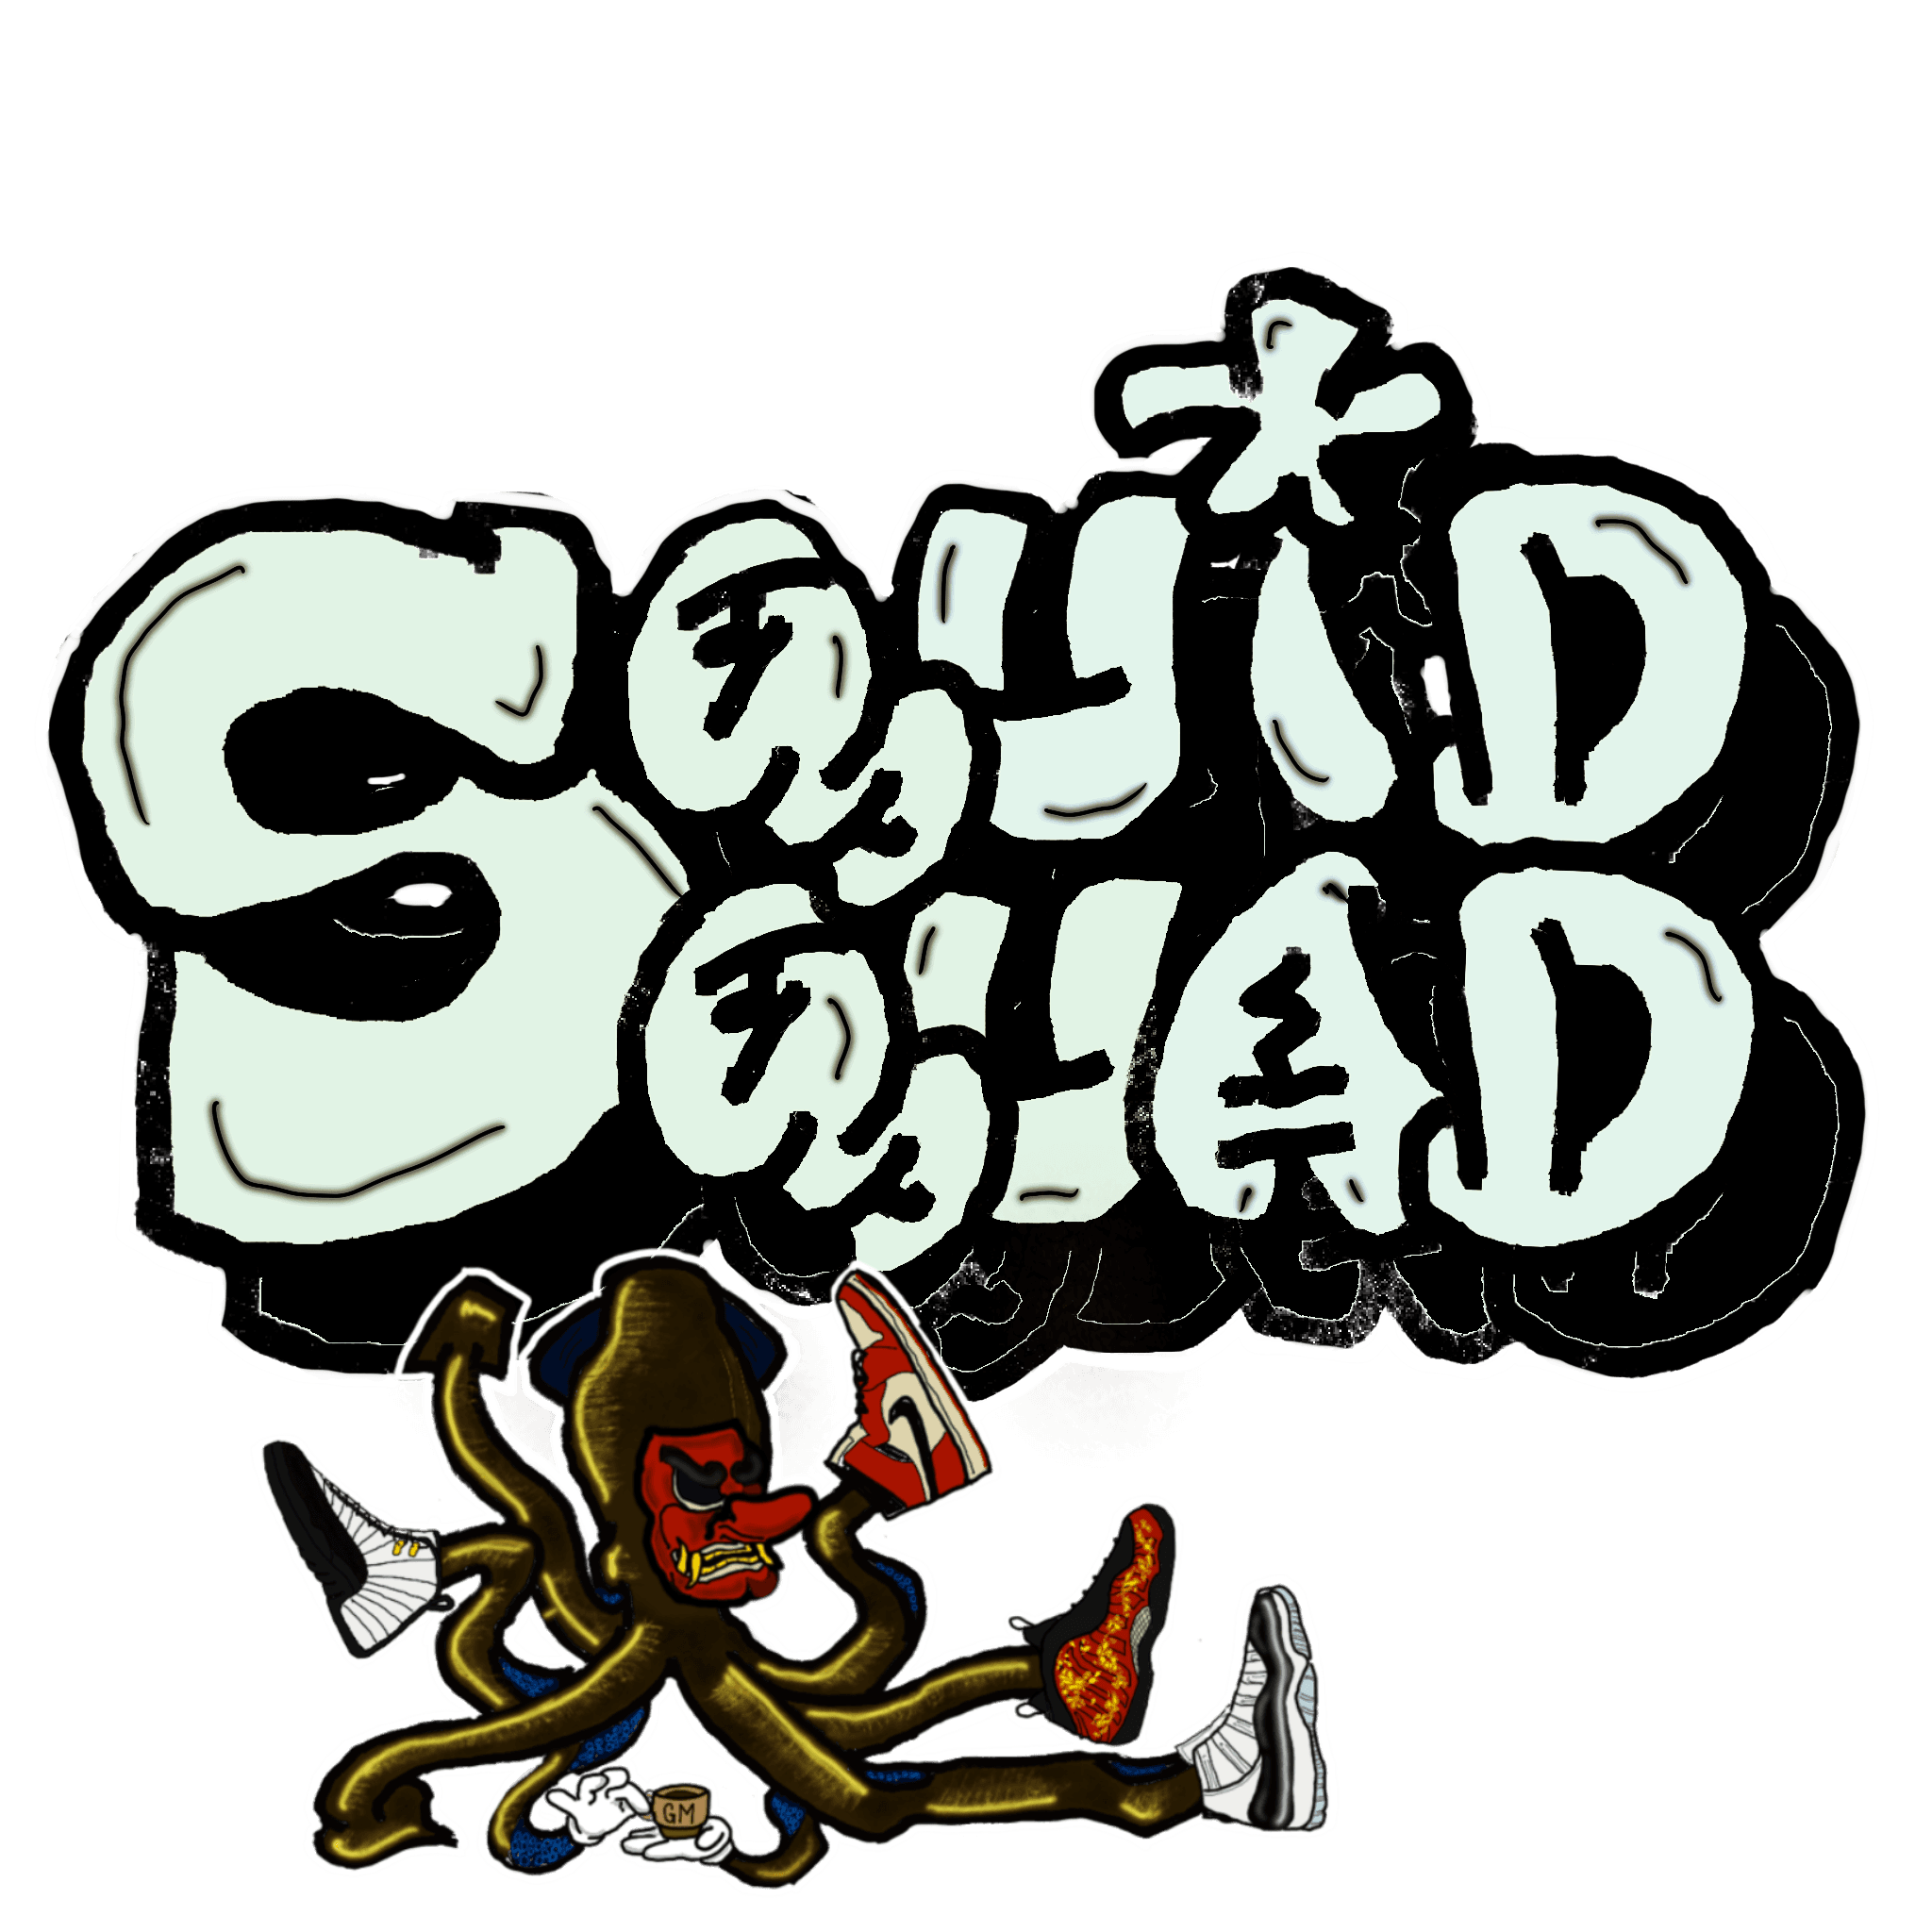 Squid_Squad_Deployer